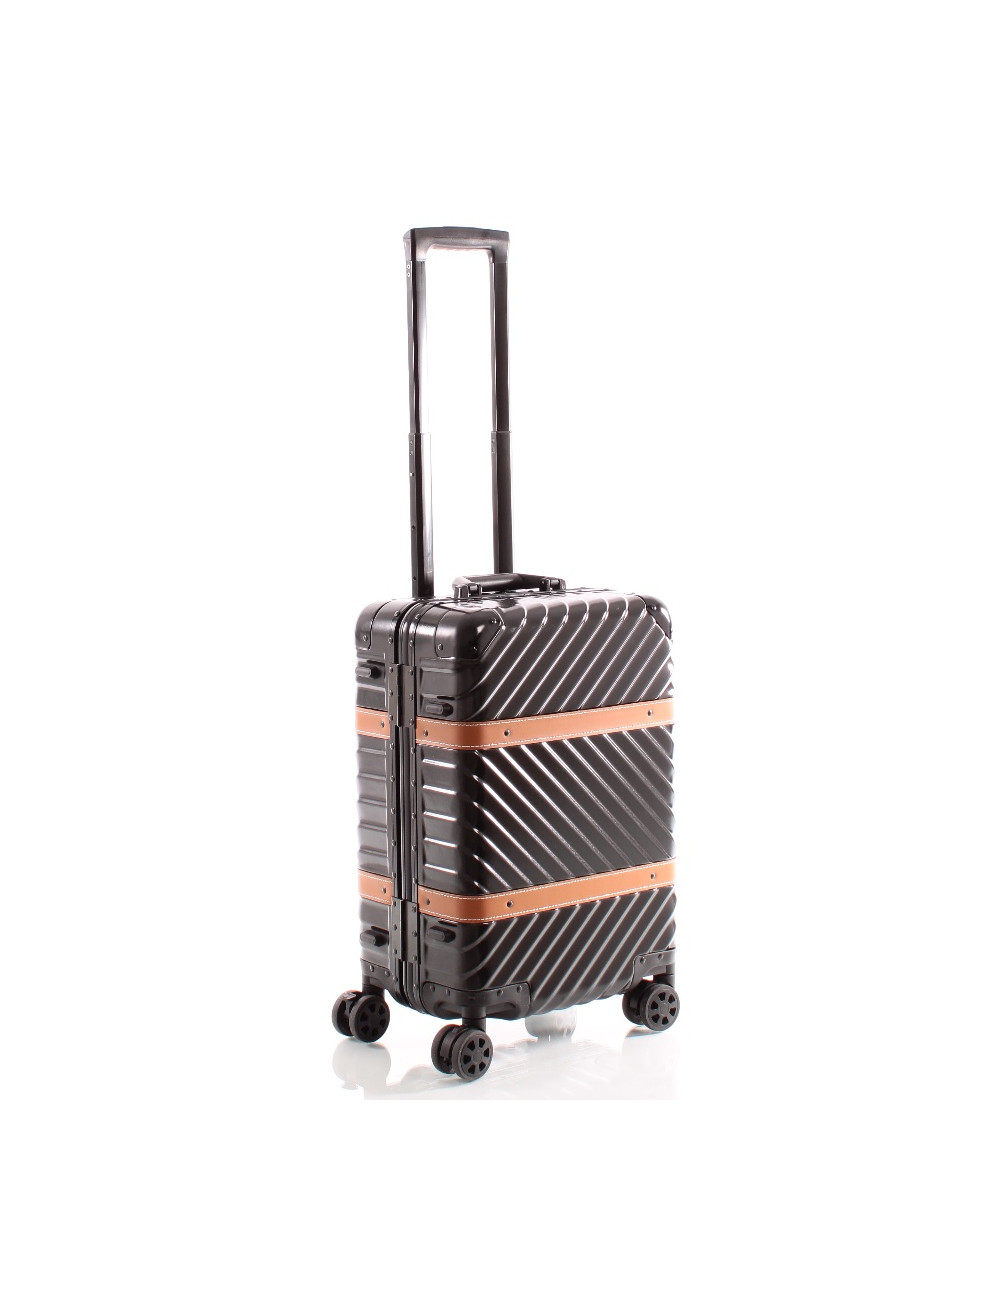 Roulette de valise, roue de valise, maison sûre pour valise